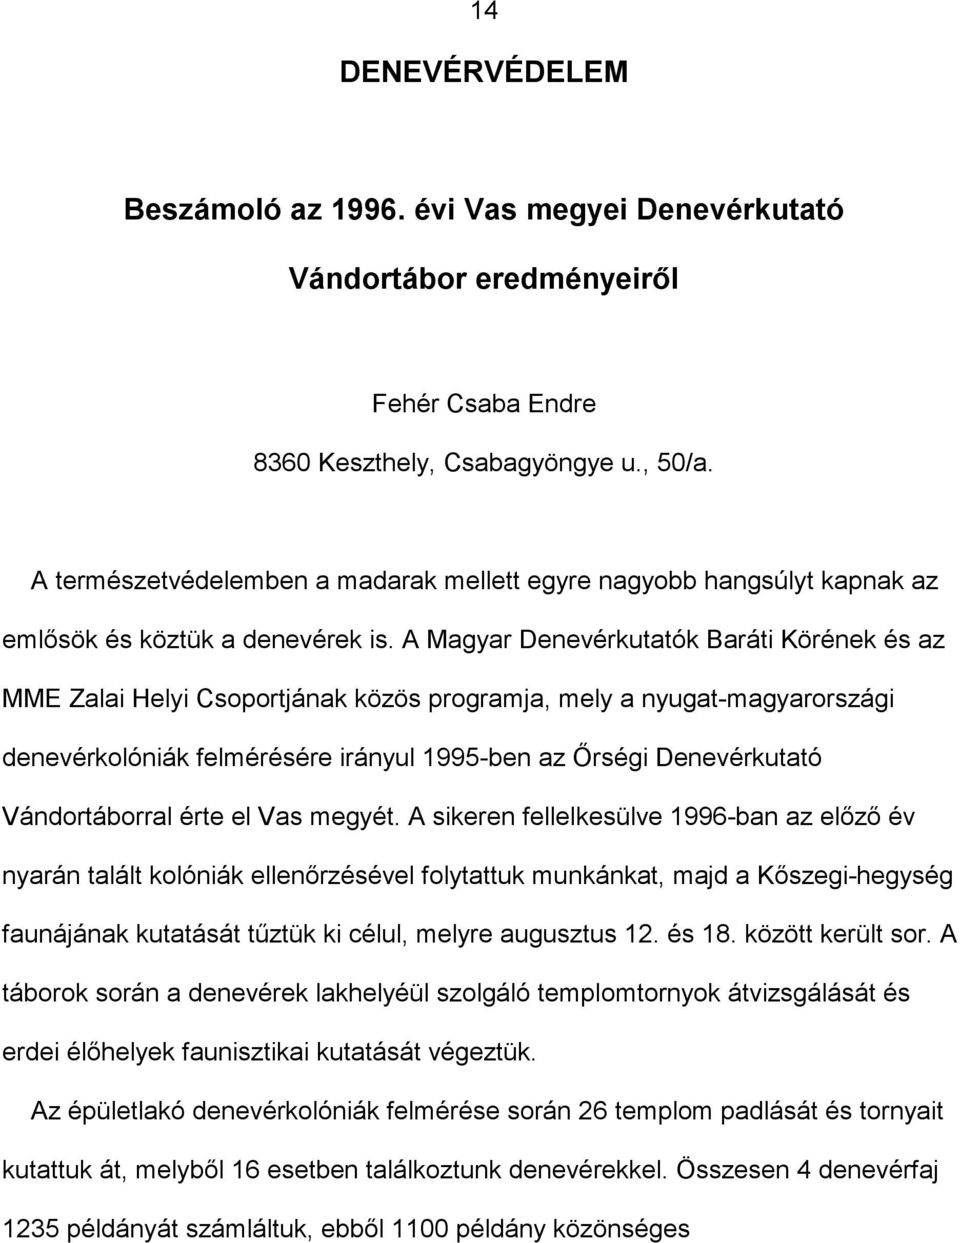 A Magyar Denevérkutatók Baráti Körének és az MME Zalai Helyi Csoportjának közös programja, mely a nyugat-magyarországi denevérkolóniák felmérésére irányul 1995-ben az Őrségi Denevérkutató